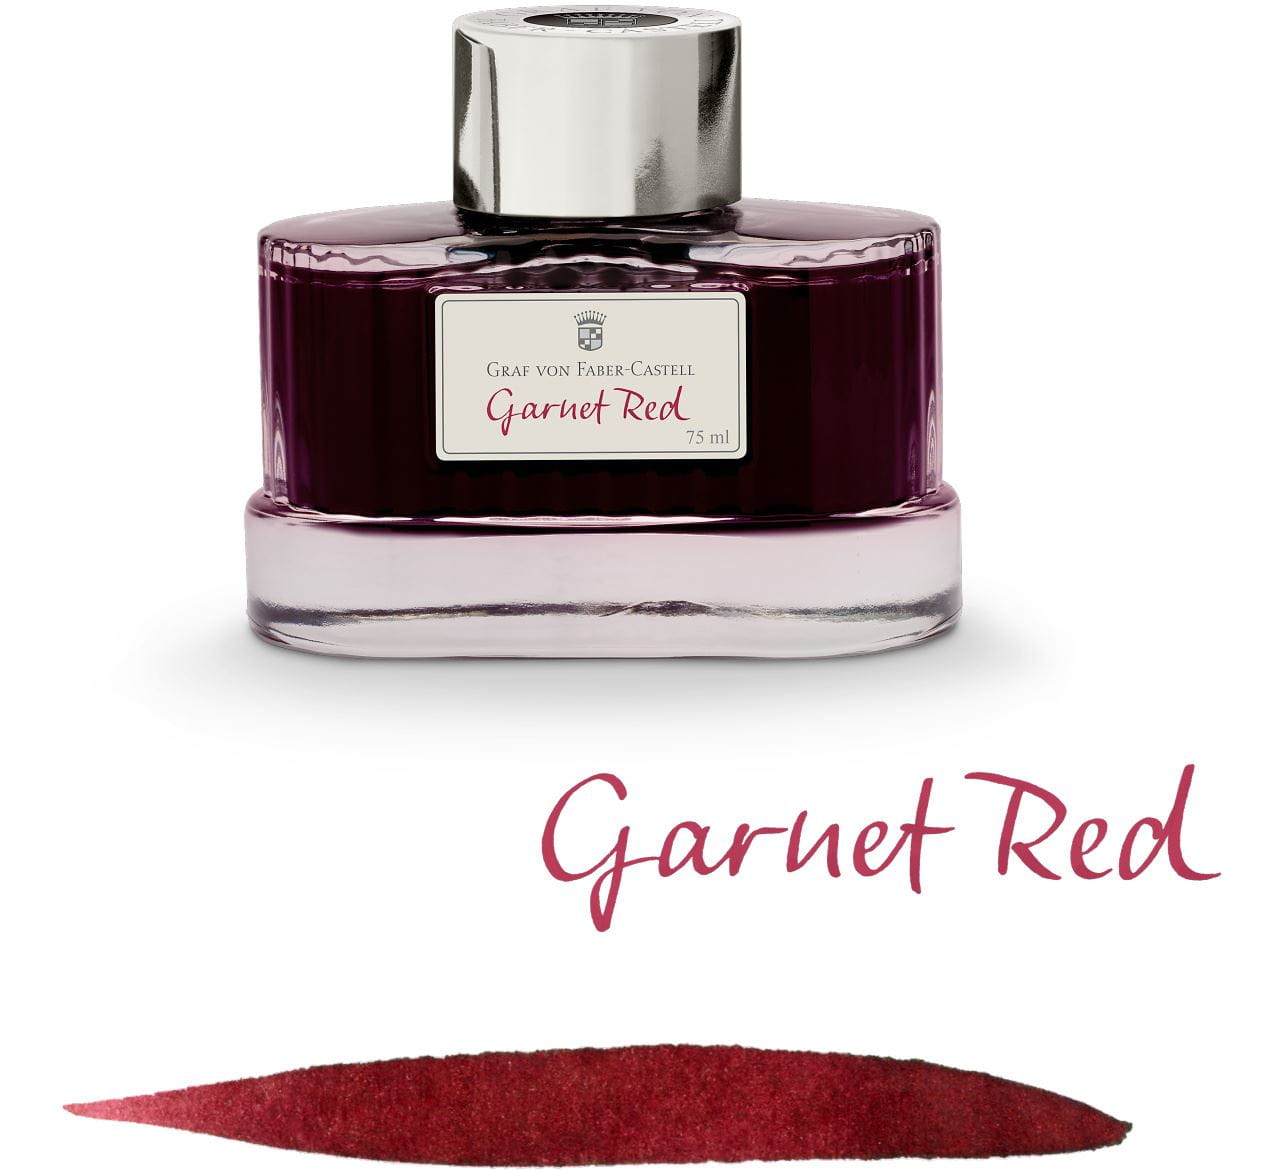 Graf-von-Faber-Castell - Tintenglas Garnet Red, 75ml